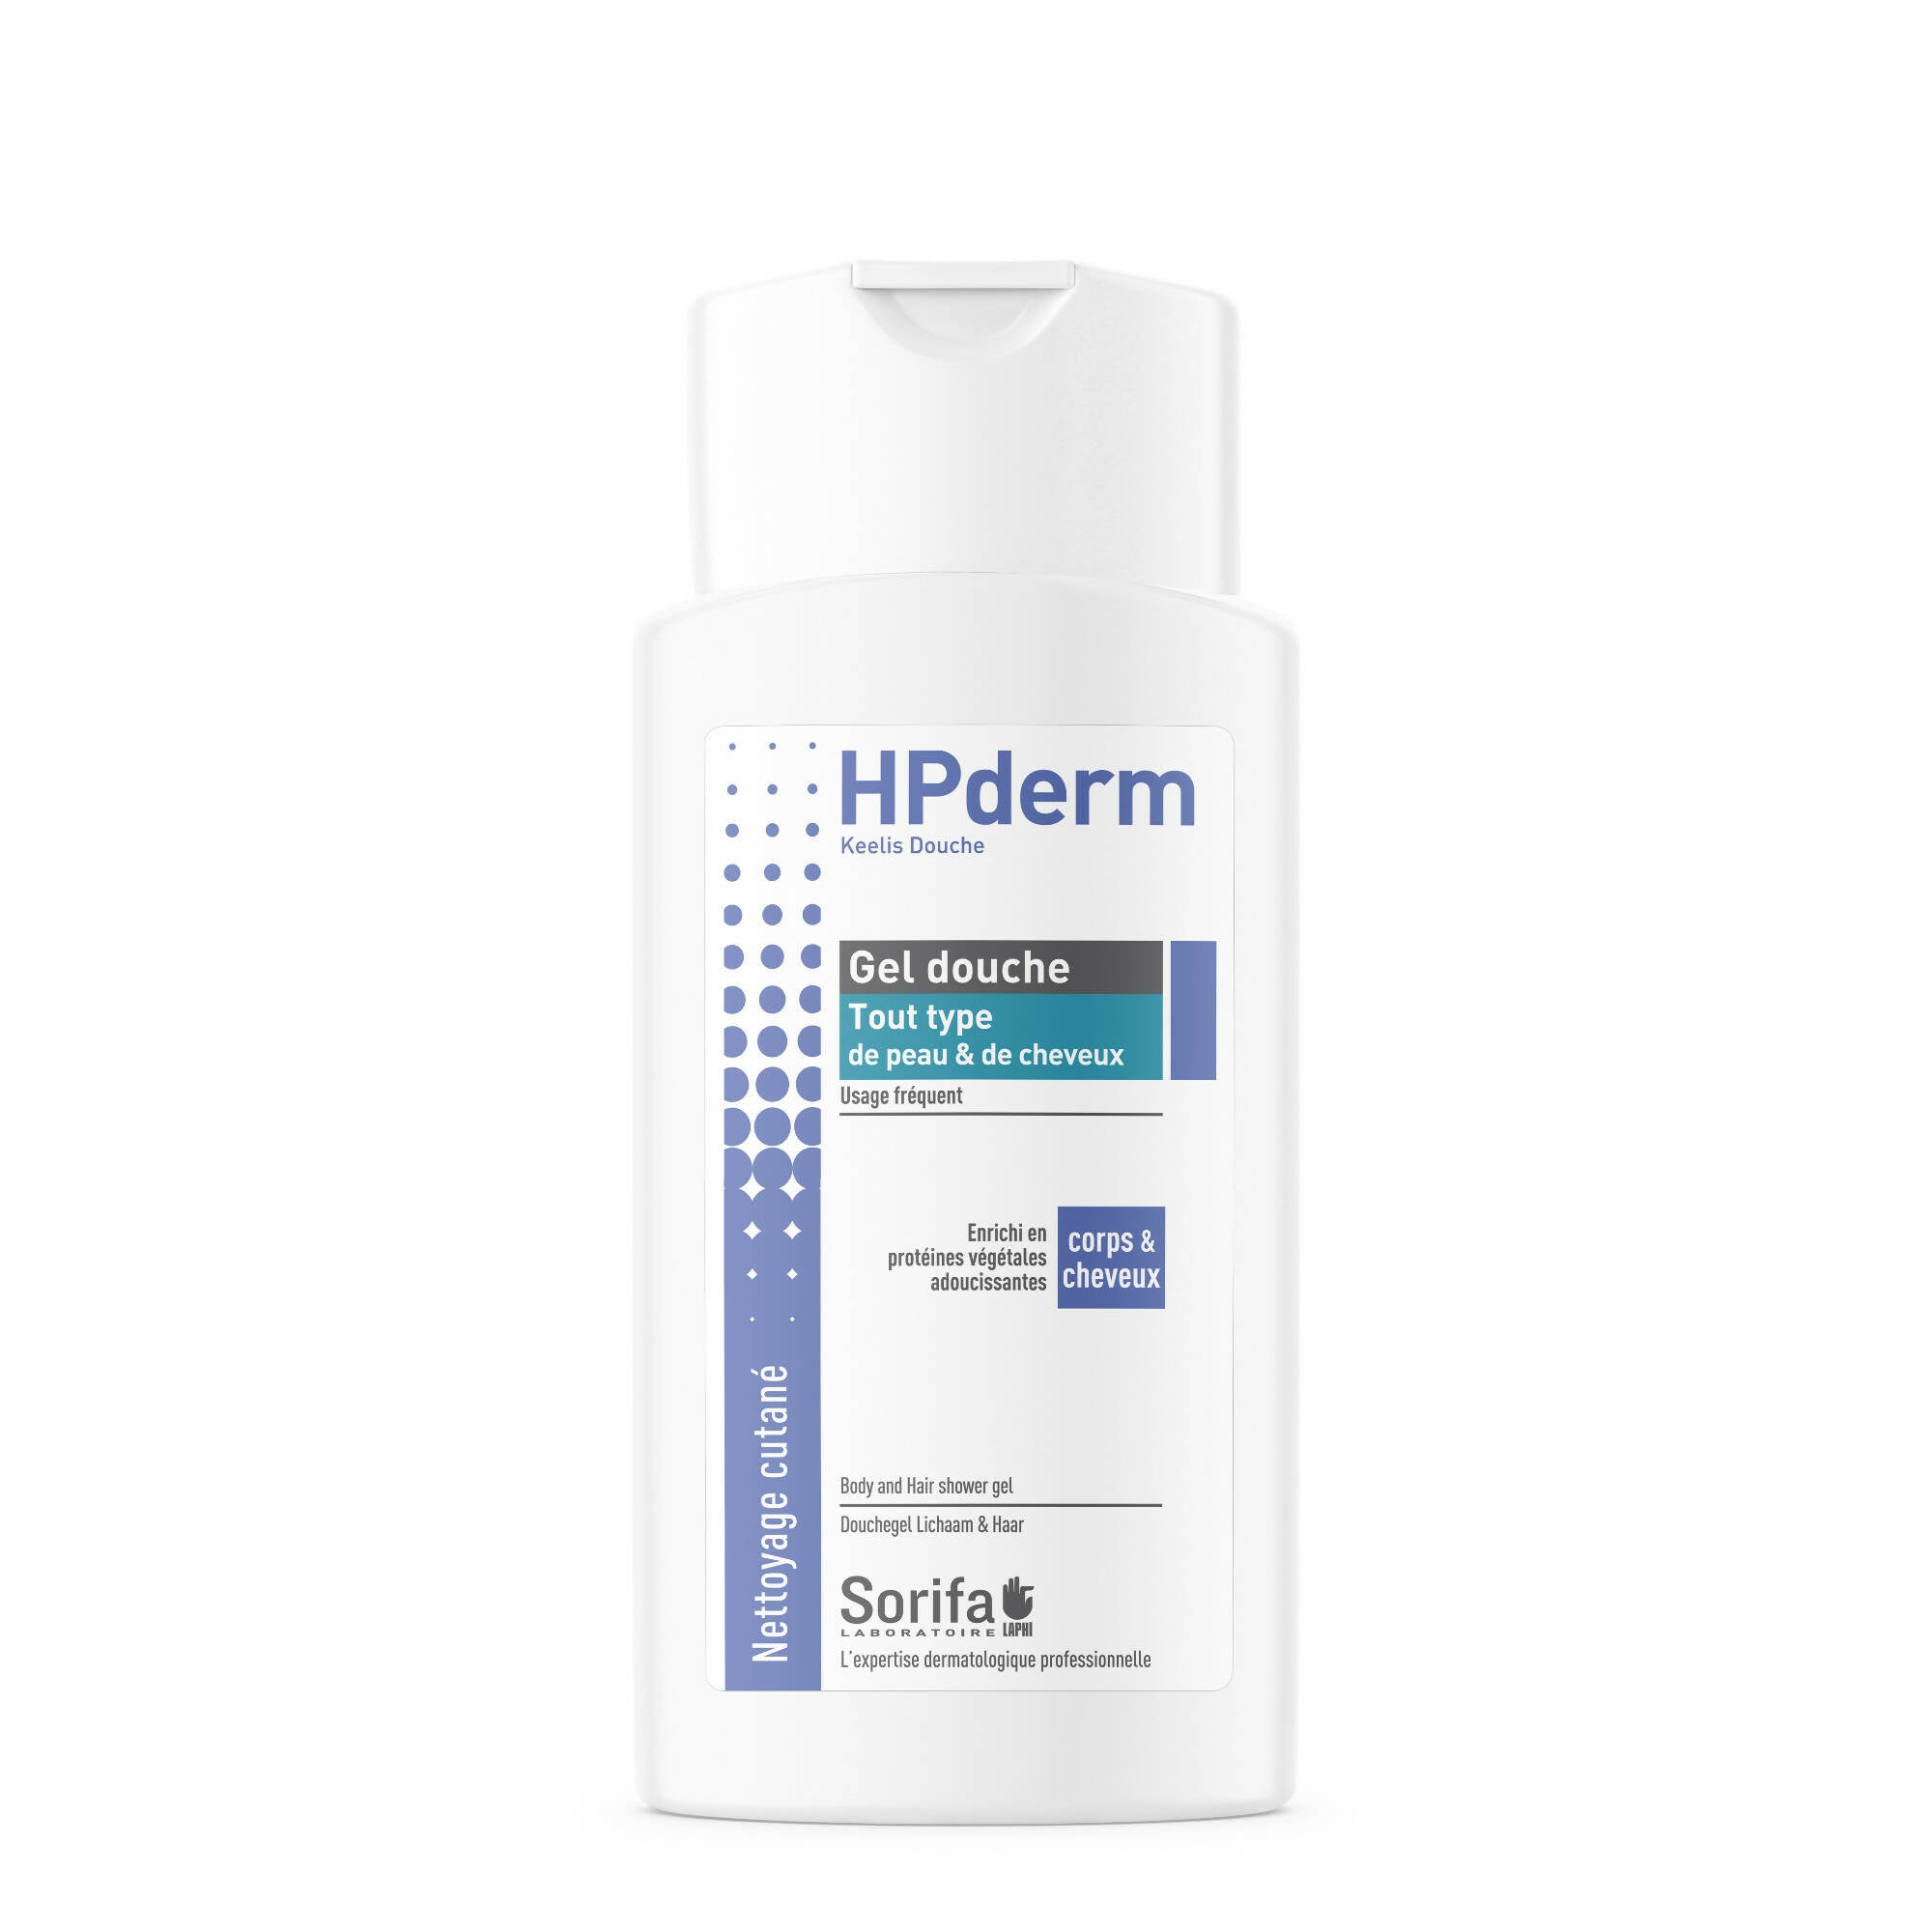 SORIFA - Lot de 5 - HPderm Gel douche - 2 en 1 corps et cheveux - Dermo-protecteur - Tout type de peau et cheveux- aux protéines d’avoine - Usage fréquent - pH neutre, sans savon - Flacon 200 ml - 0